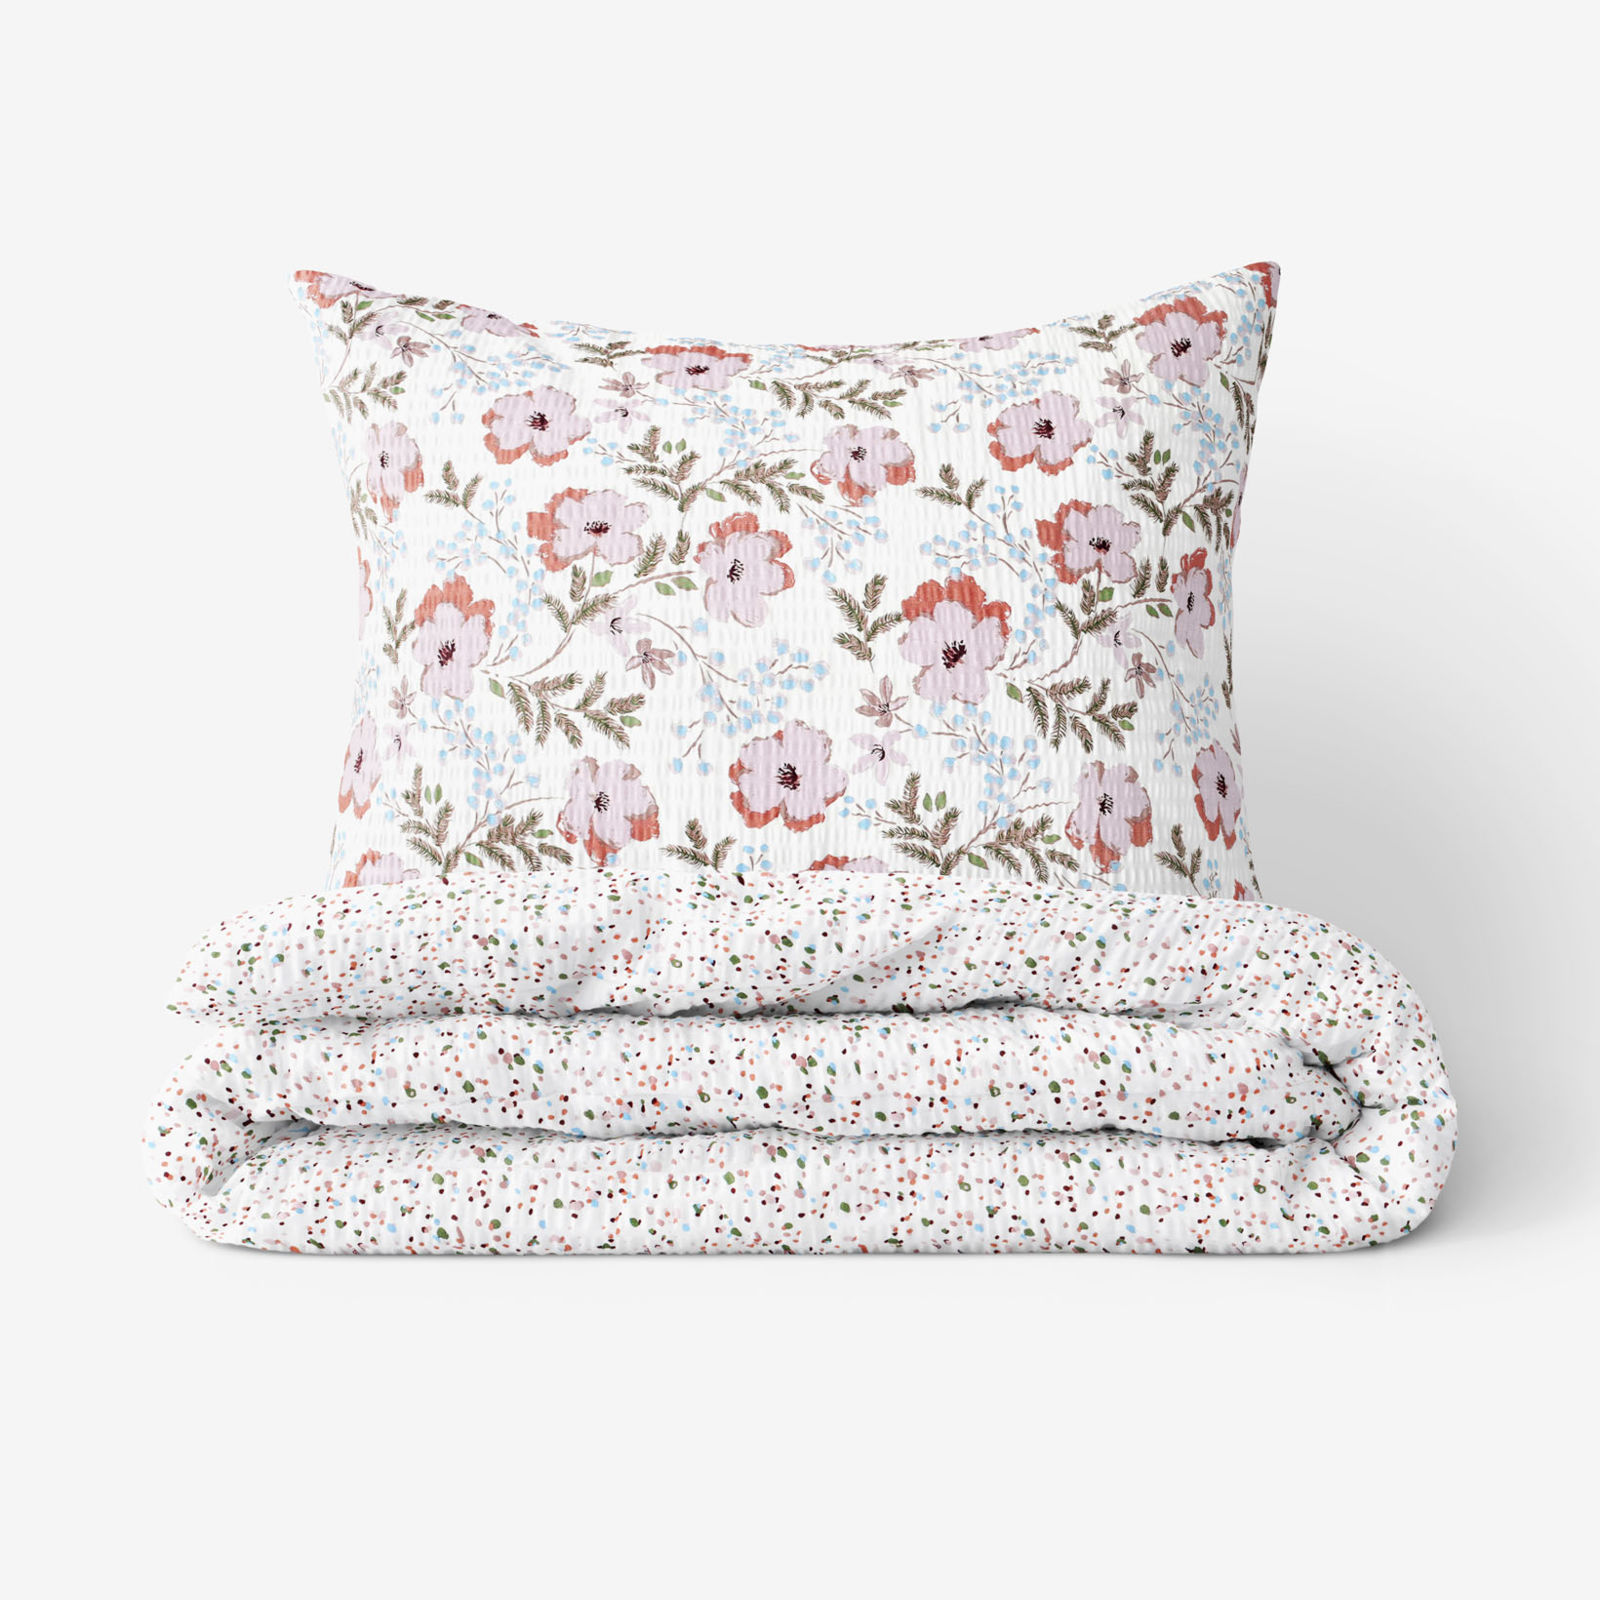 Krepové posteľné obliečky - sivohnedé kvety s farebnými drobnými tvarmi